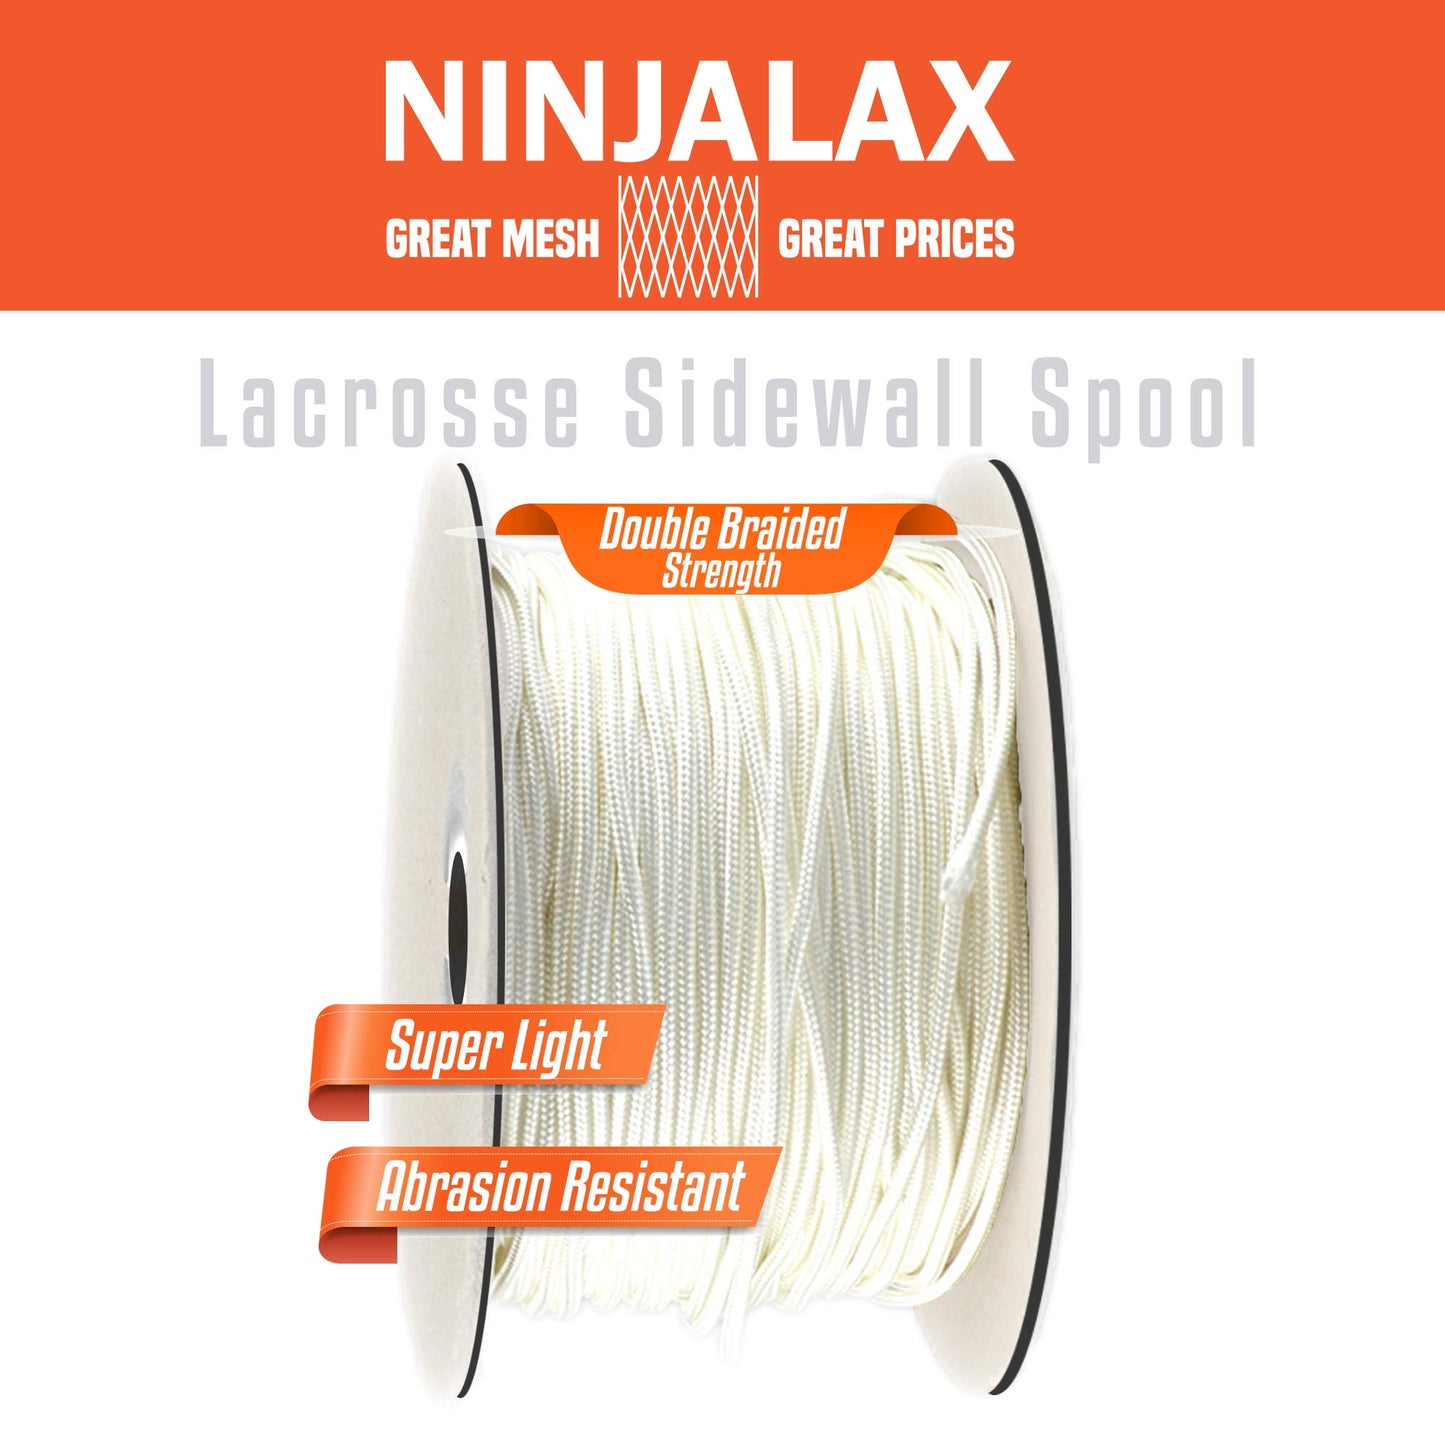 Ninjalax Lacrosse Sidewall Stringing Spool - 300 feet